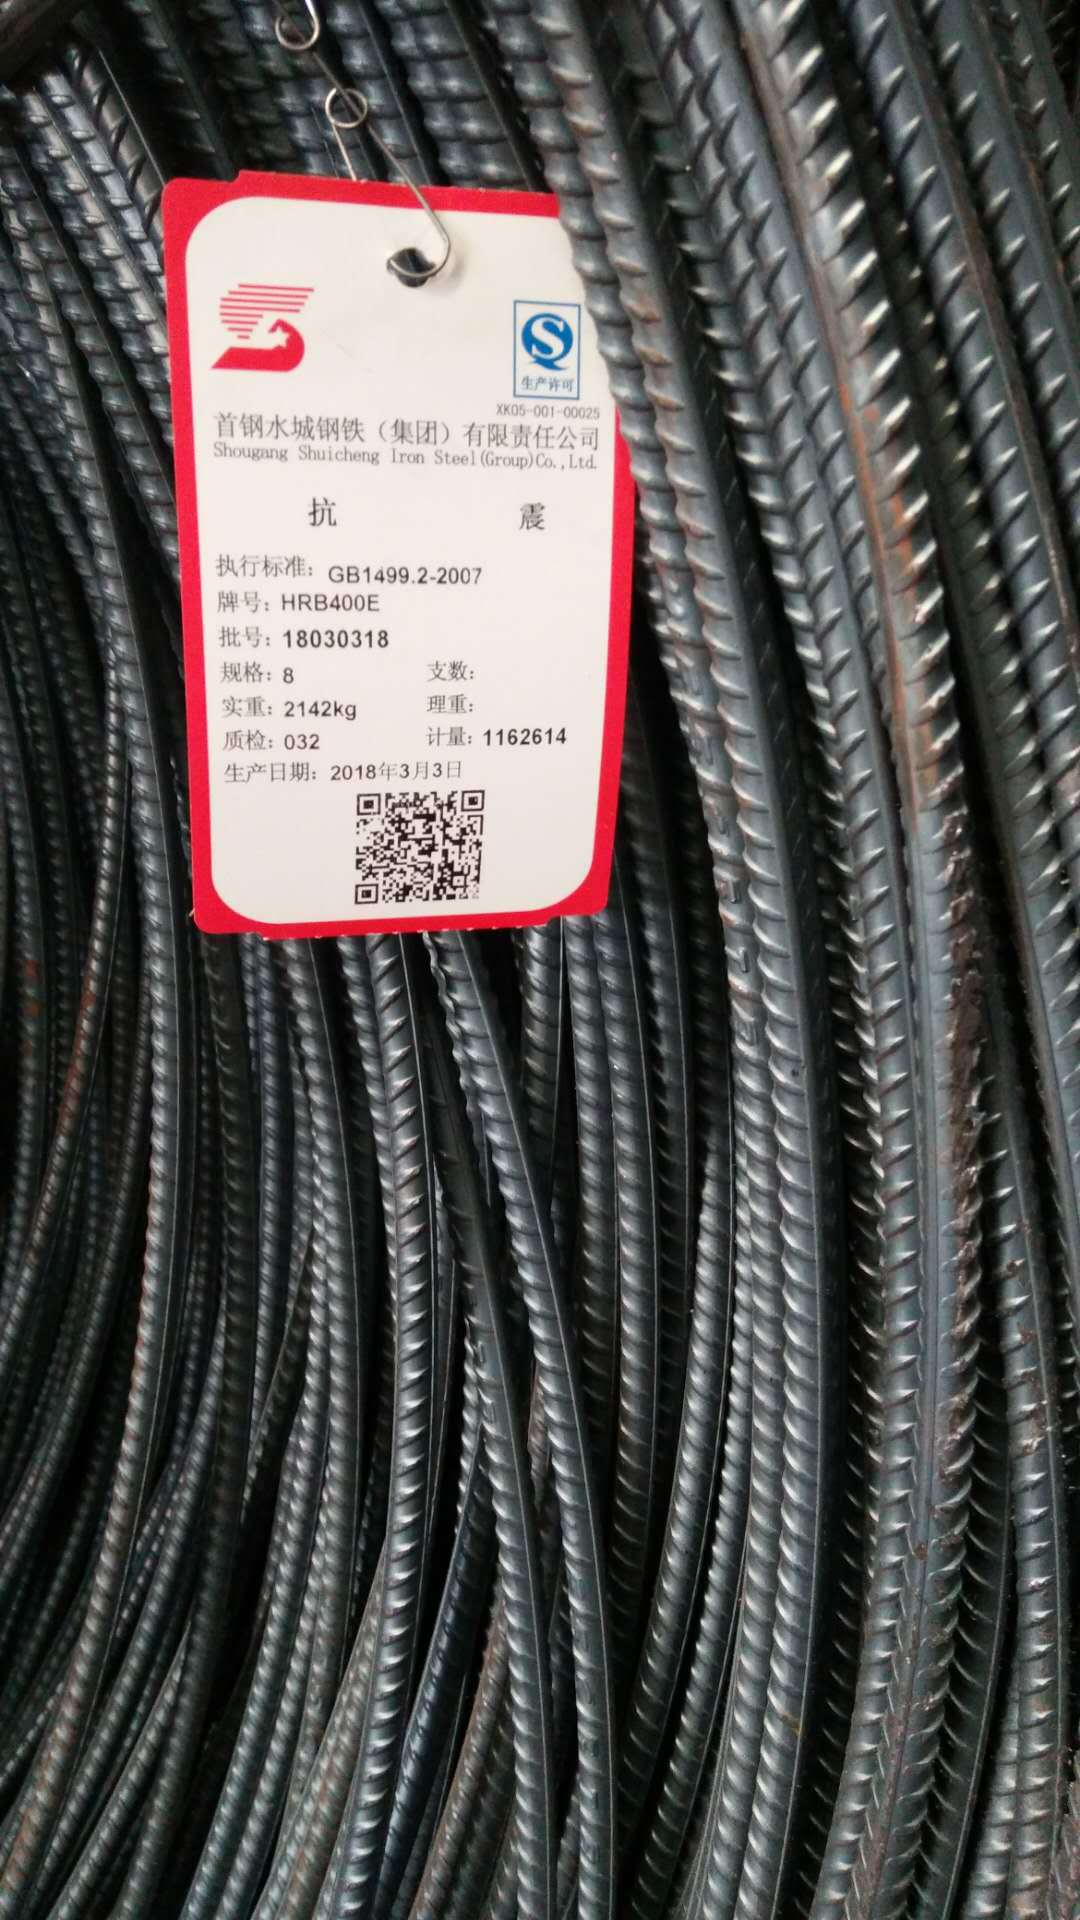 贵州兴友盛达低价直销Φ12-40柳钢 螺纹钢线材,欢迎来电详询